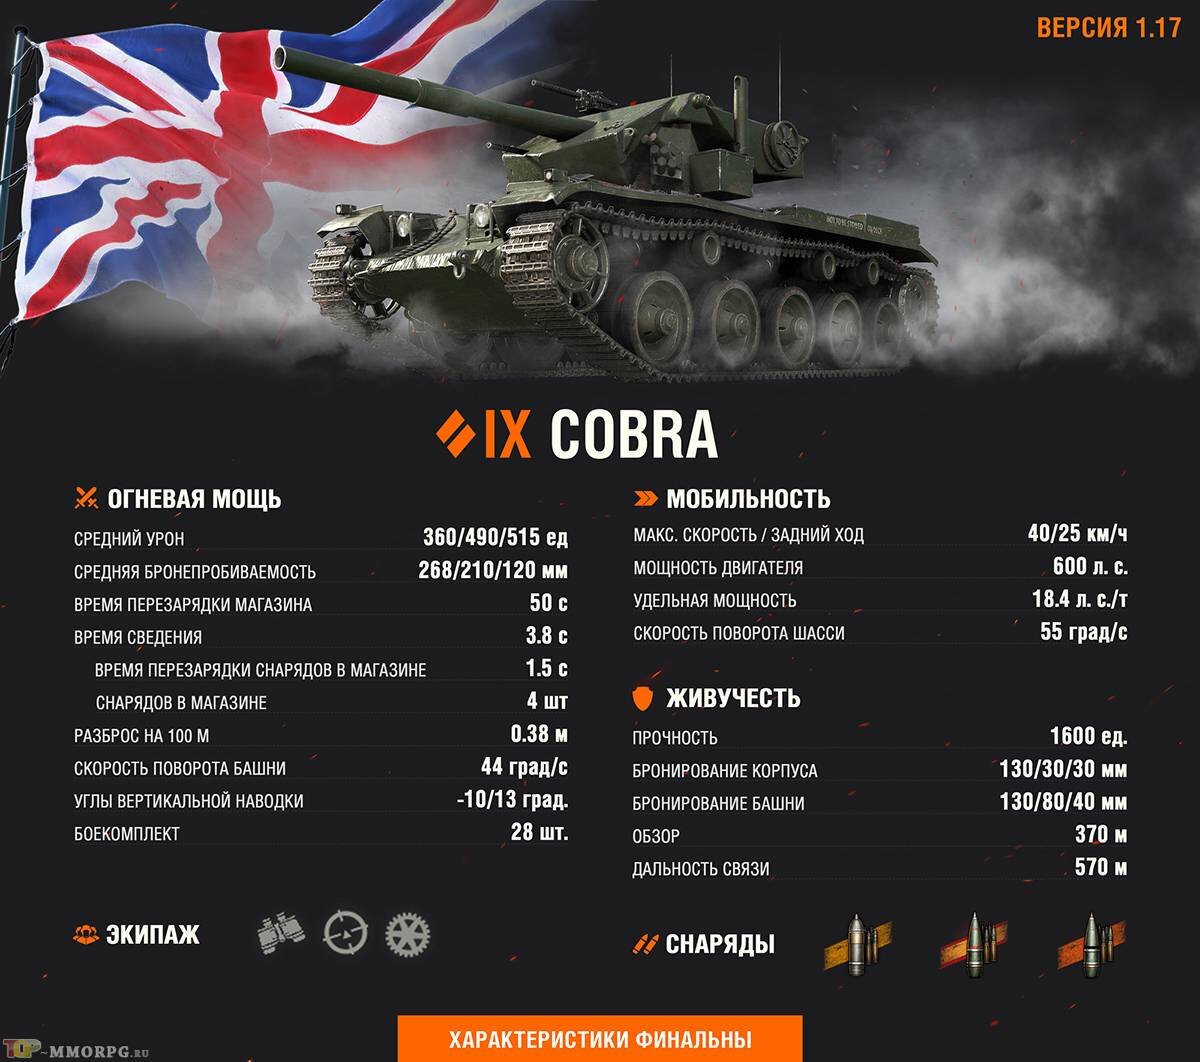  Уже 8 июня в World of Tanks запустят VIII сезон Боевого пропуска, собрав достаточно жетонов можно приобрести средний танк Британии Cobra IX уровня. В свежей статье показали его финальные параметры.-2